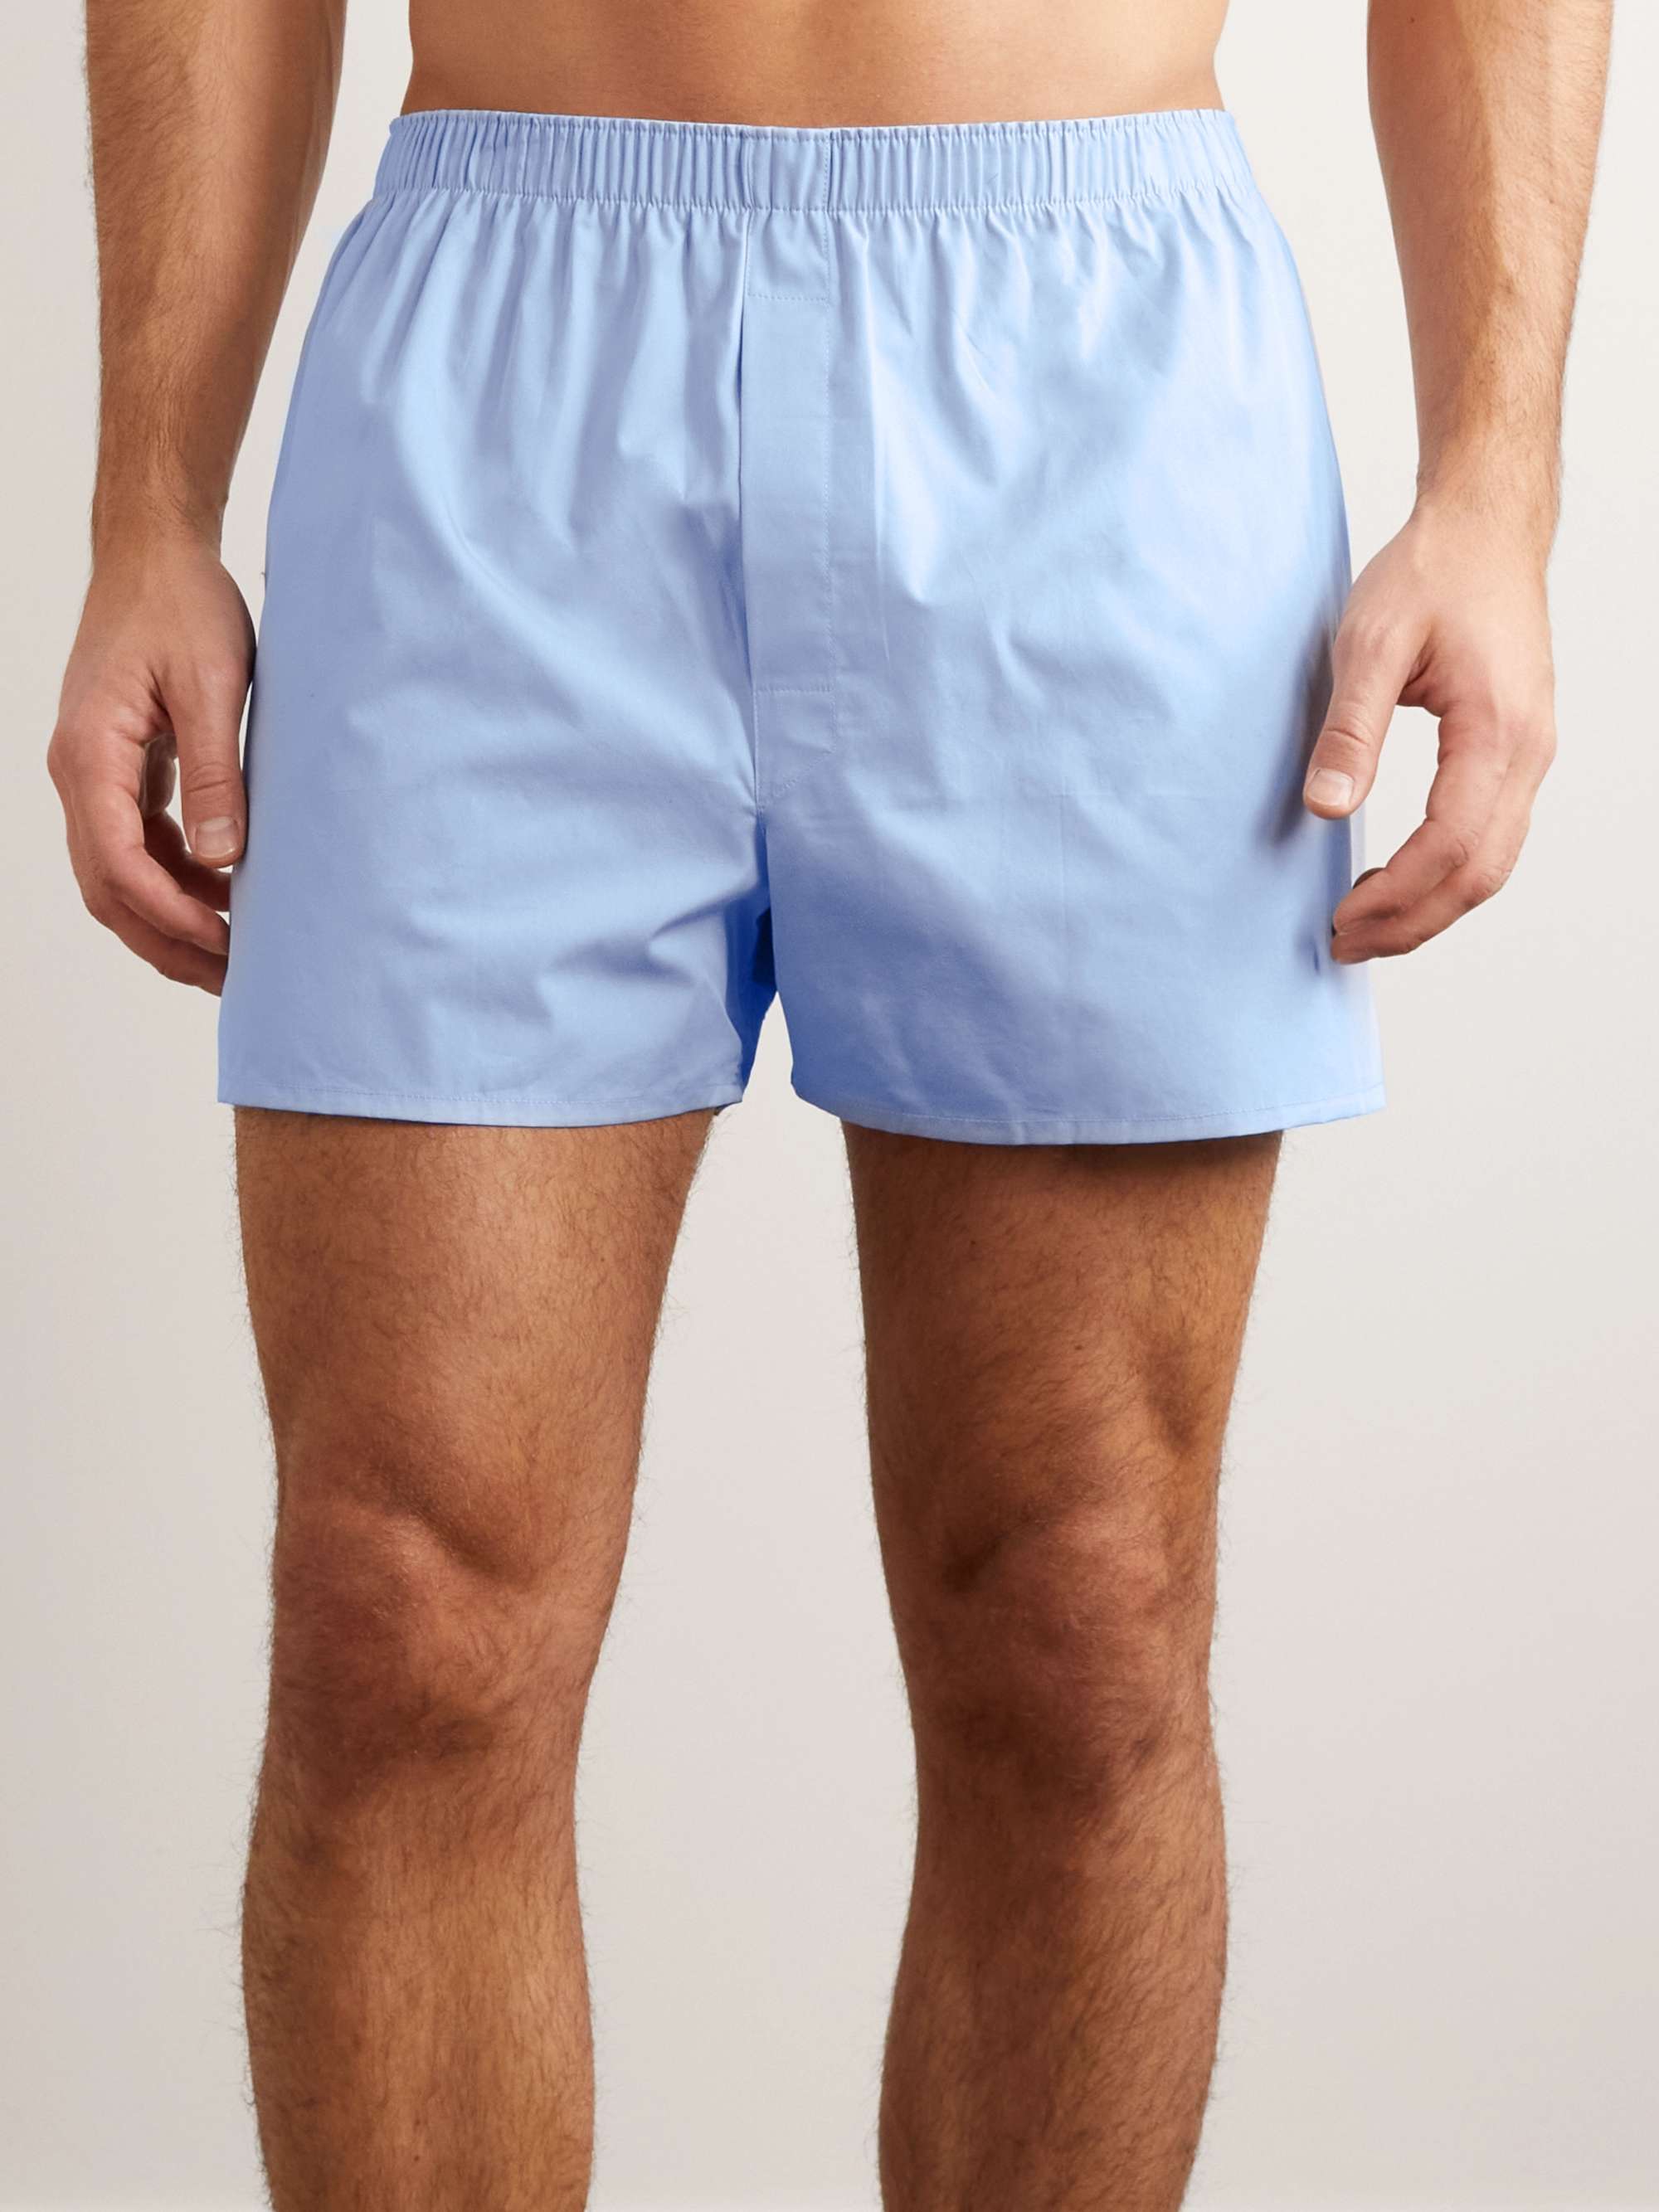 SUNSPEL Cotton Boxer Shorts for Men | MR PORTER